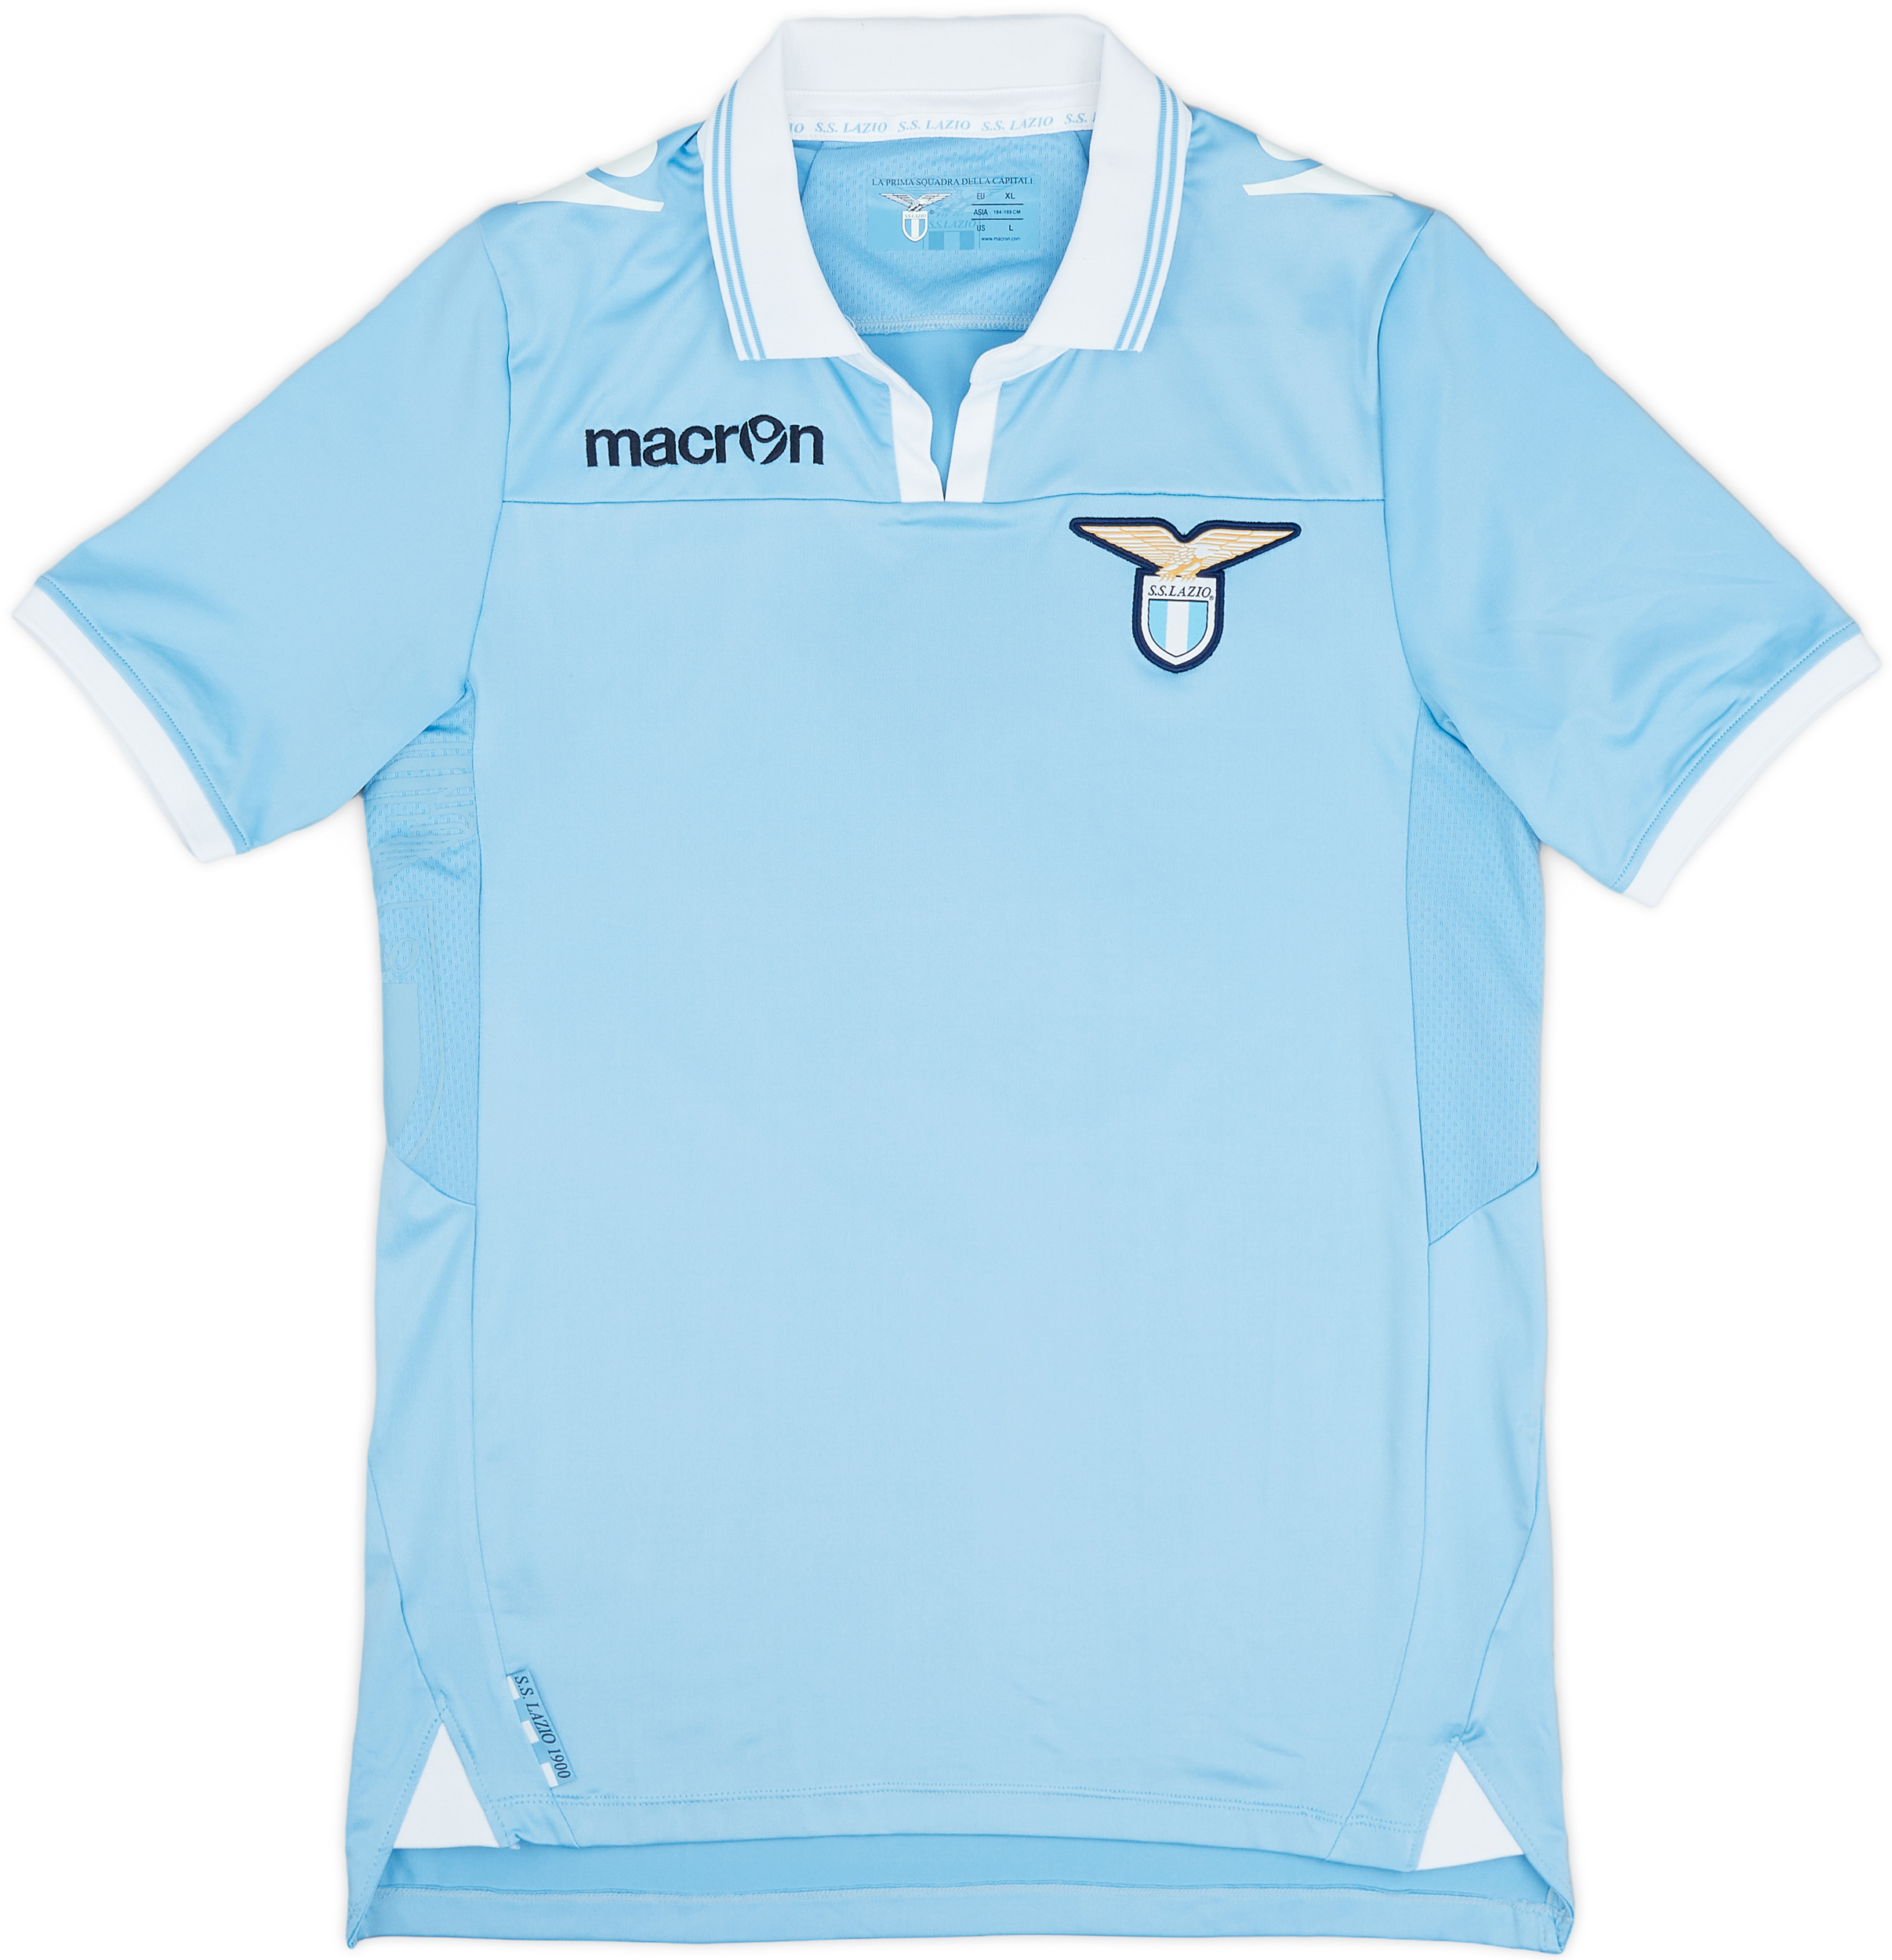 Lazio  home camisa (Original)